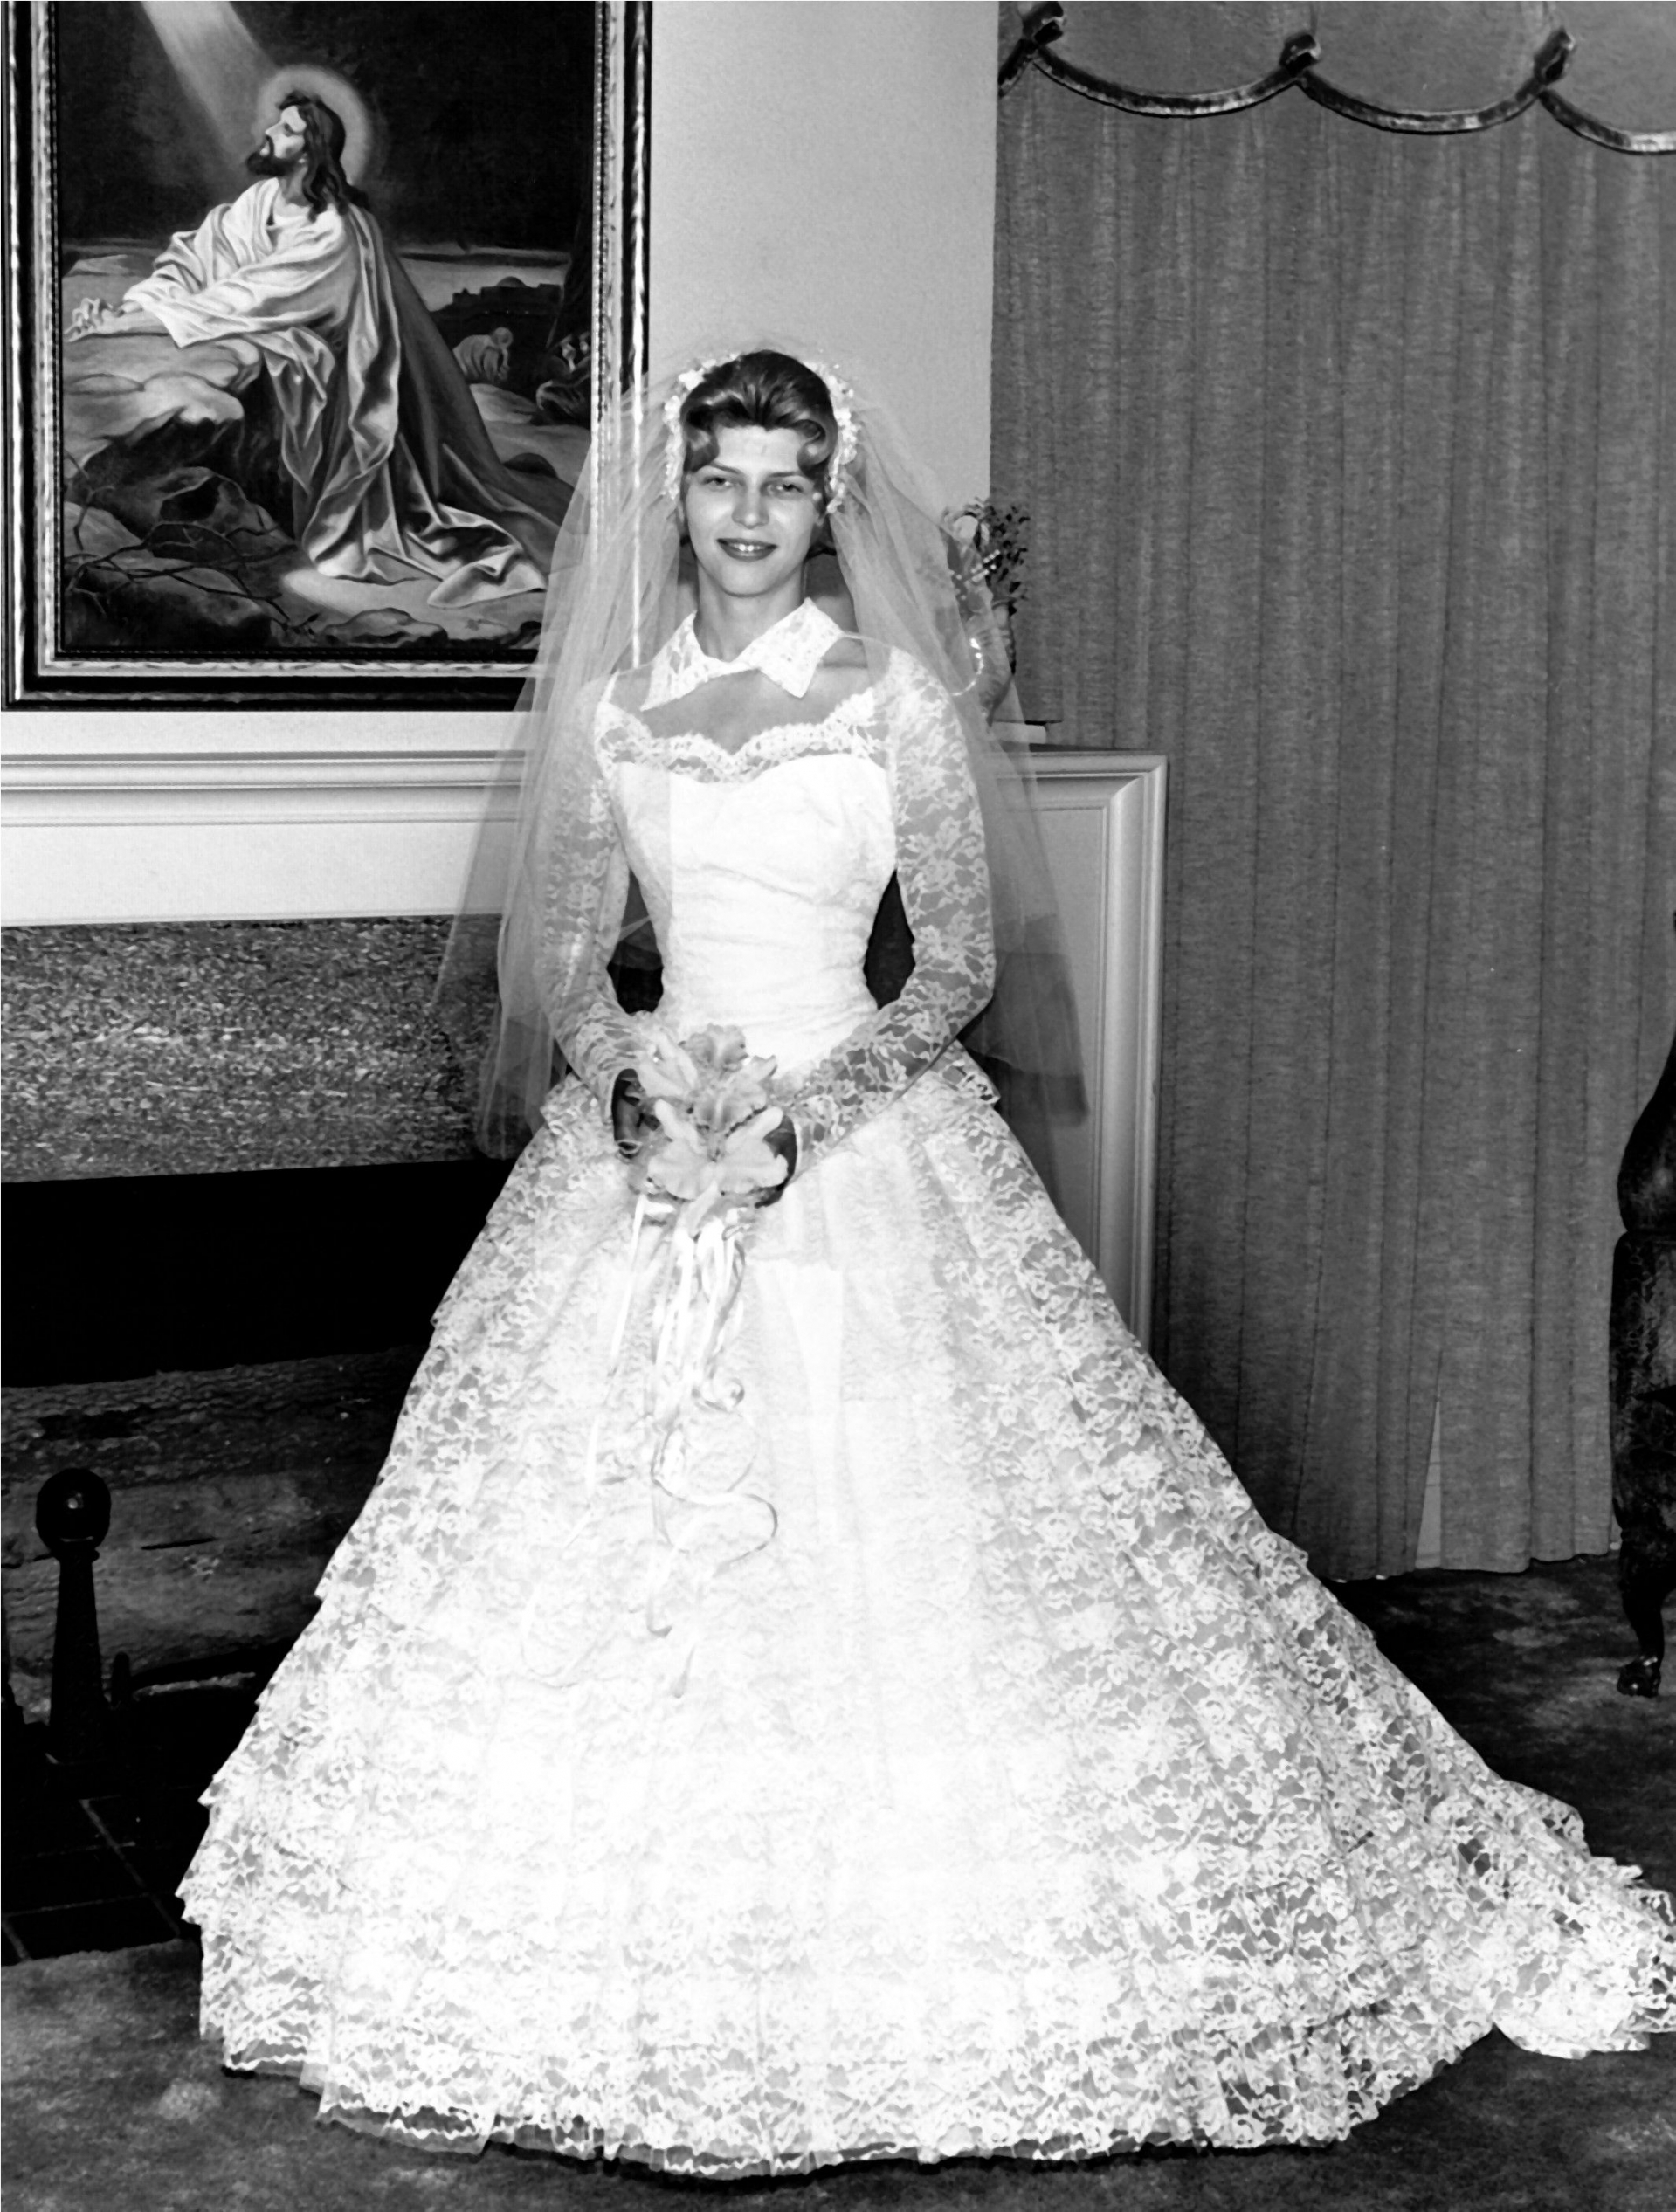 Váy cưới đã thay đổi thế nào trong hơn 100 năm qua? - Ảnh 6